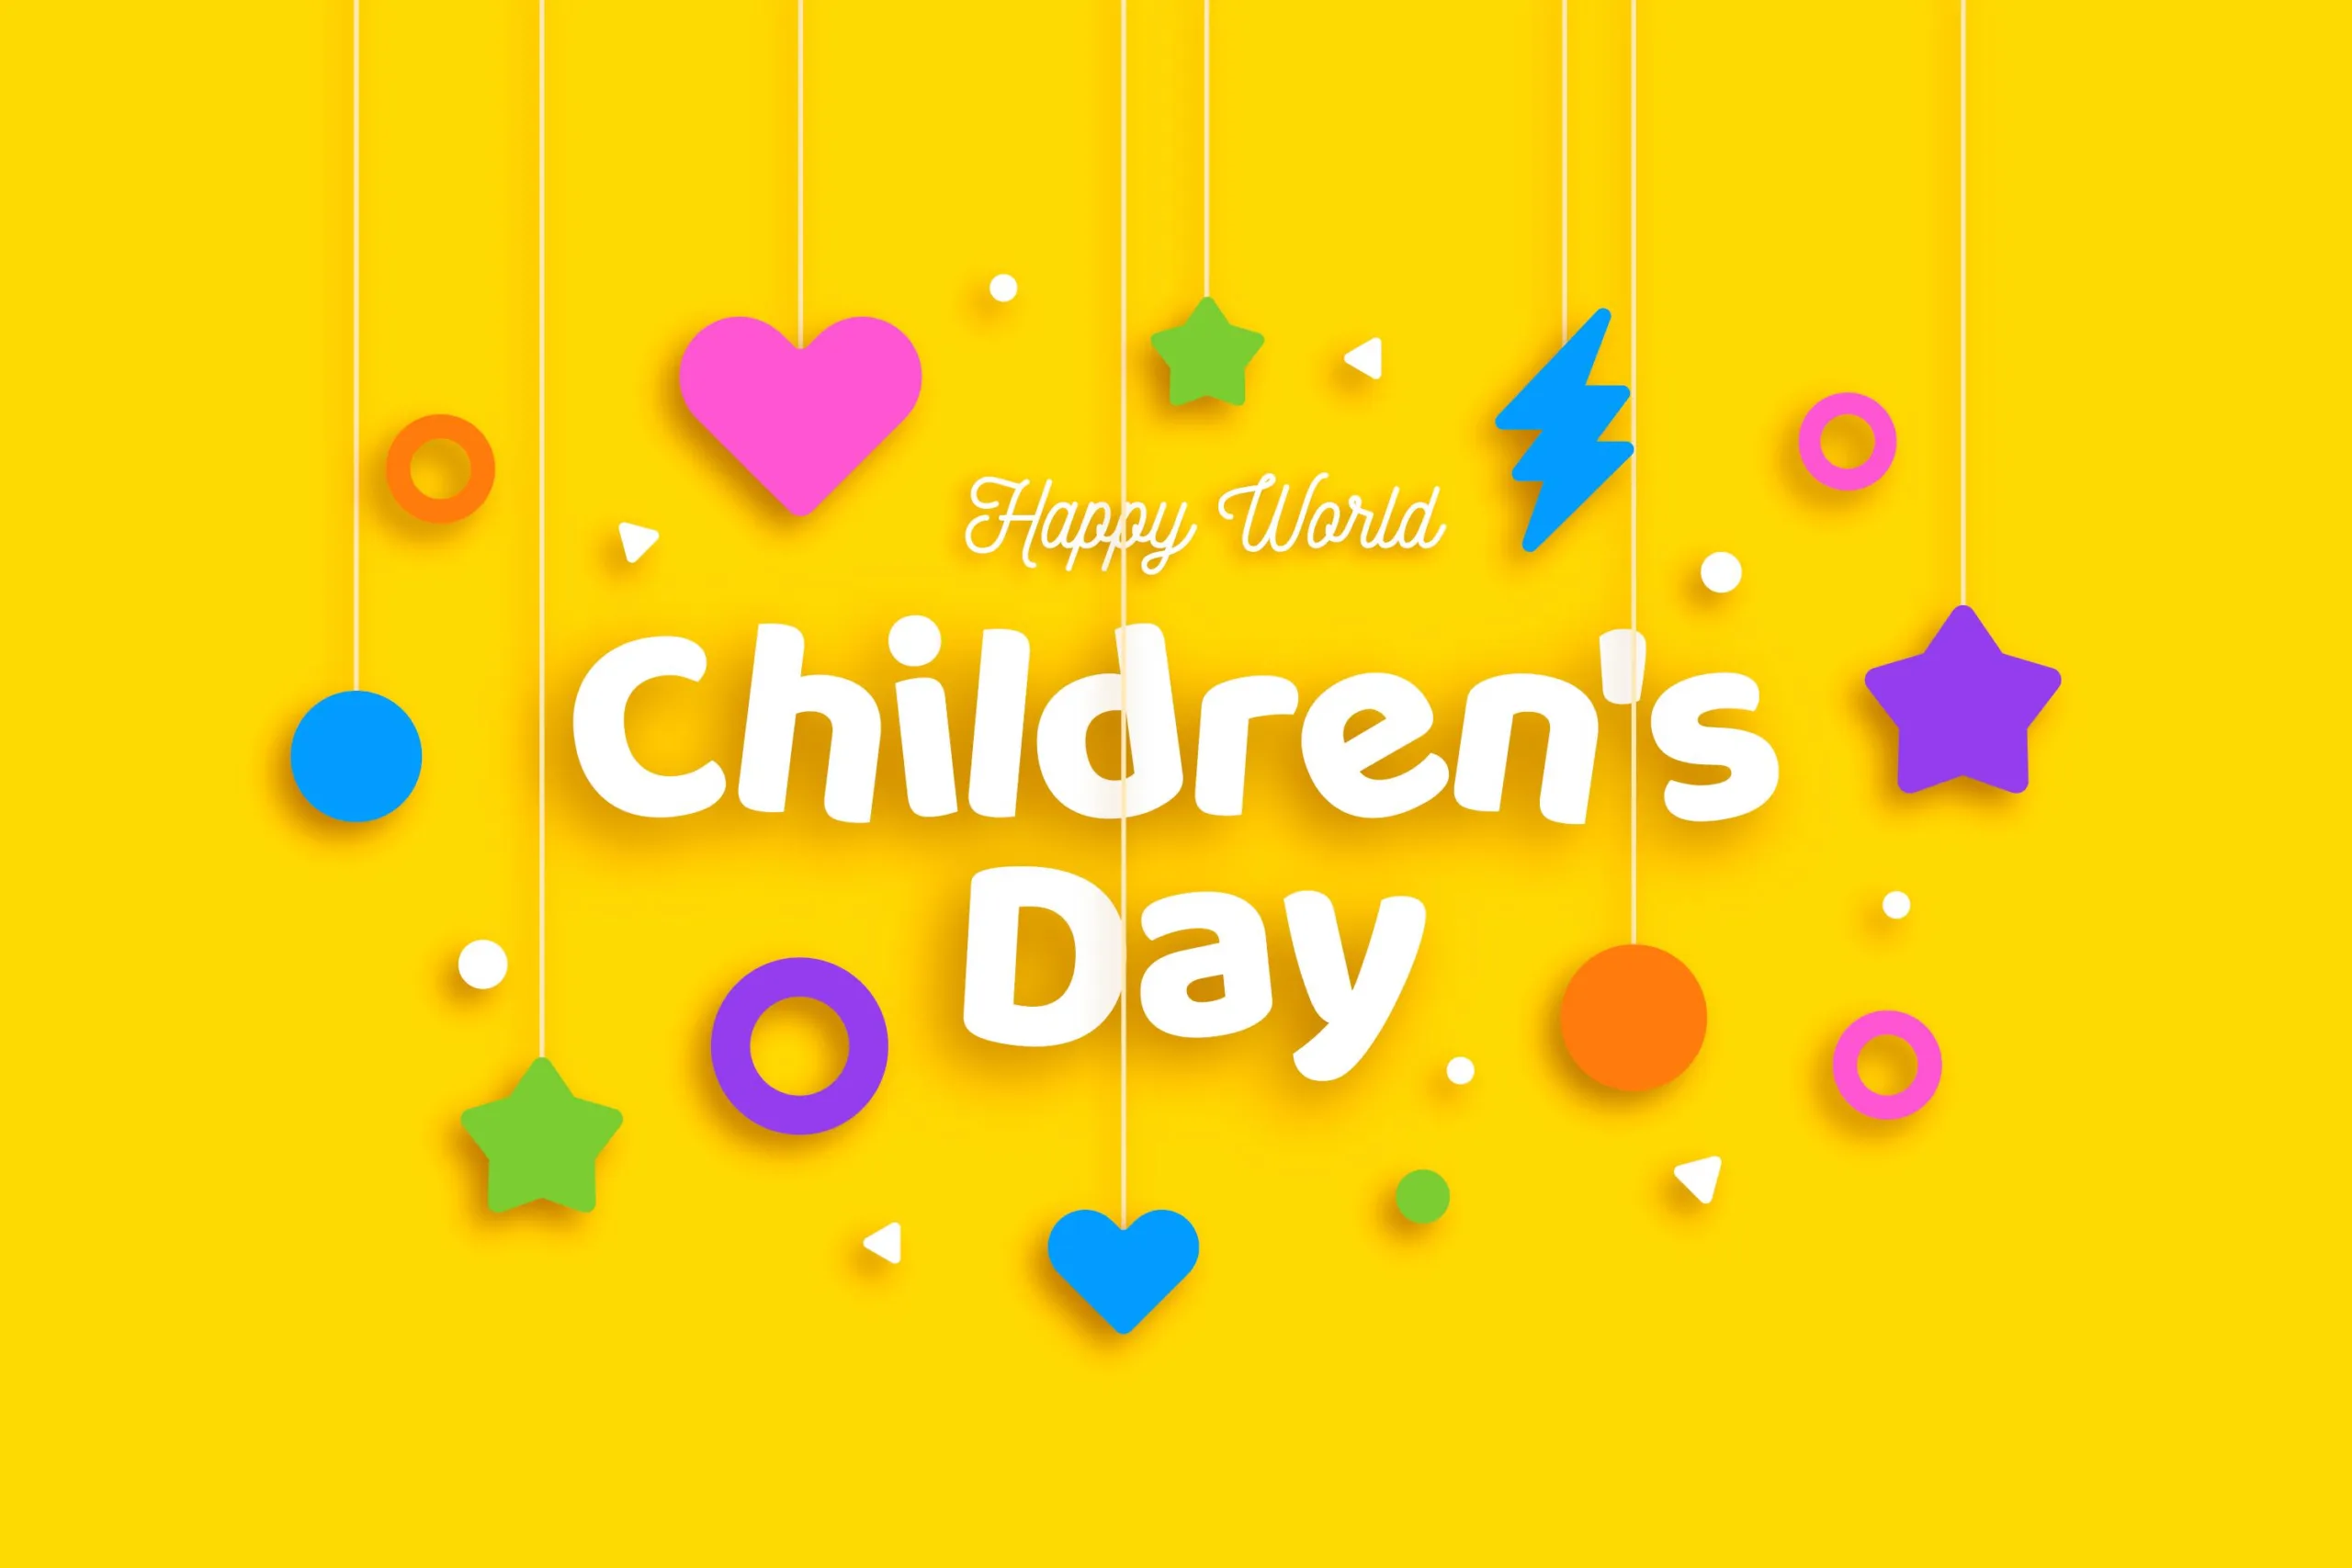 बच्चों के दिन • जवाहरलाल नेहरु: बचपन को समर्पित, भारत के प्रथम प्रधानमंत्री की जीवनी से भरपूर जानकारी प्राप्त करें